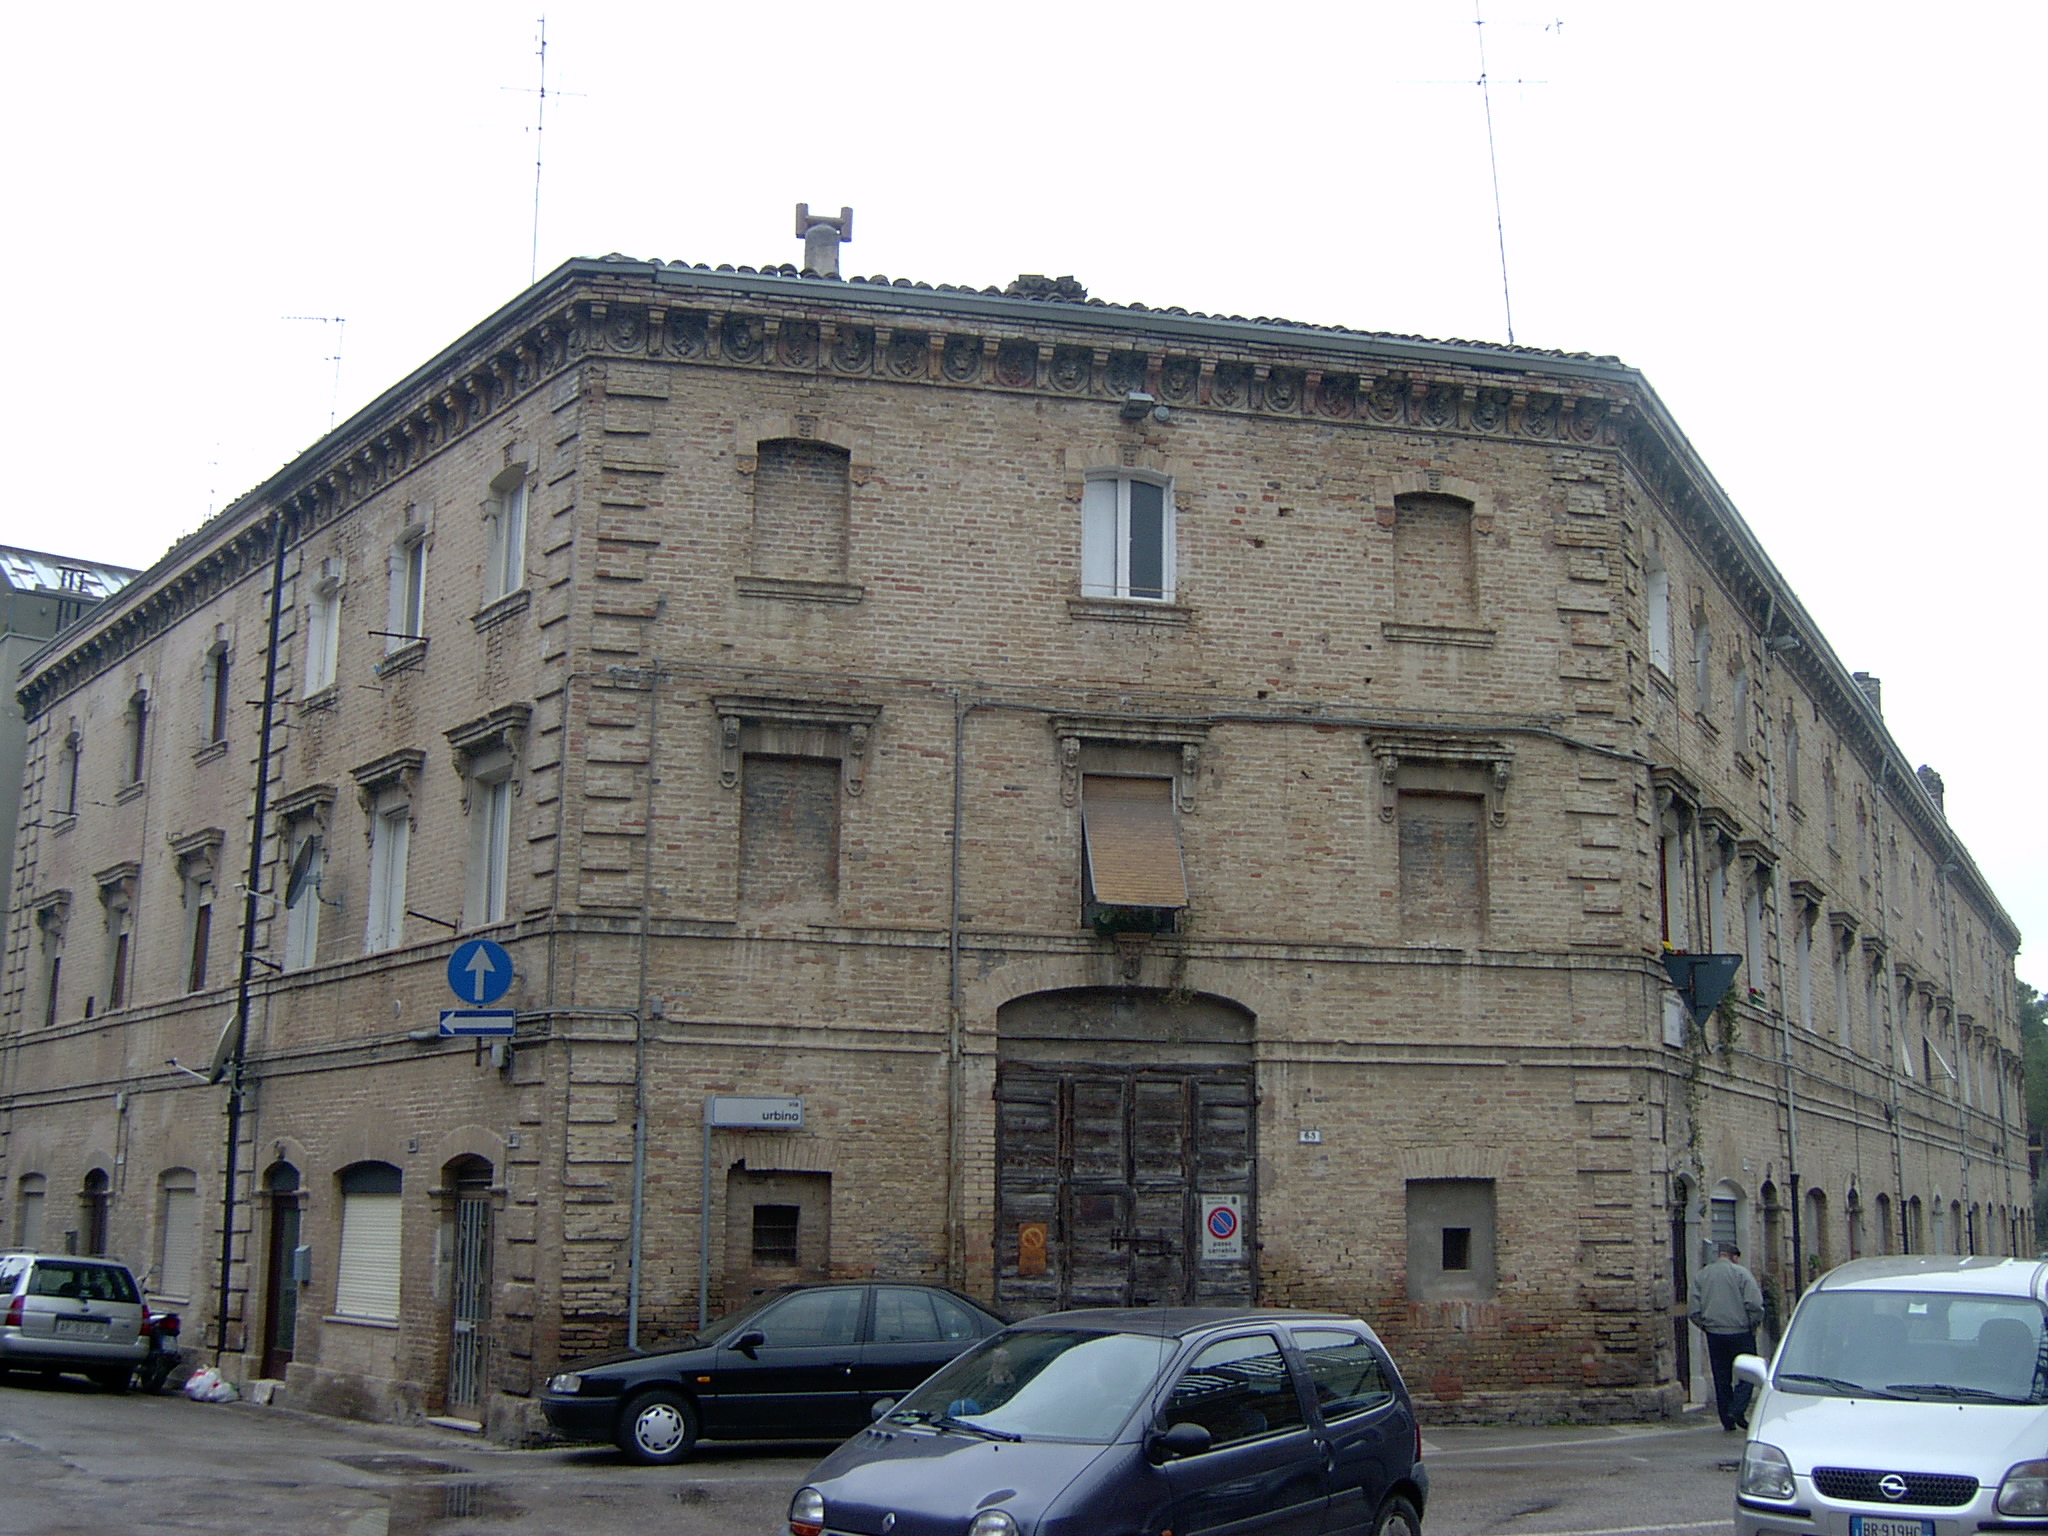 Palazzaccio (palazzo, di appartamenti) - Macerata (MC) 